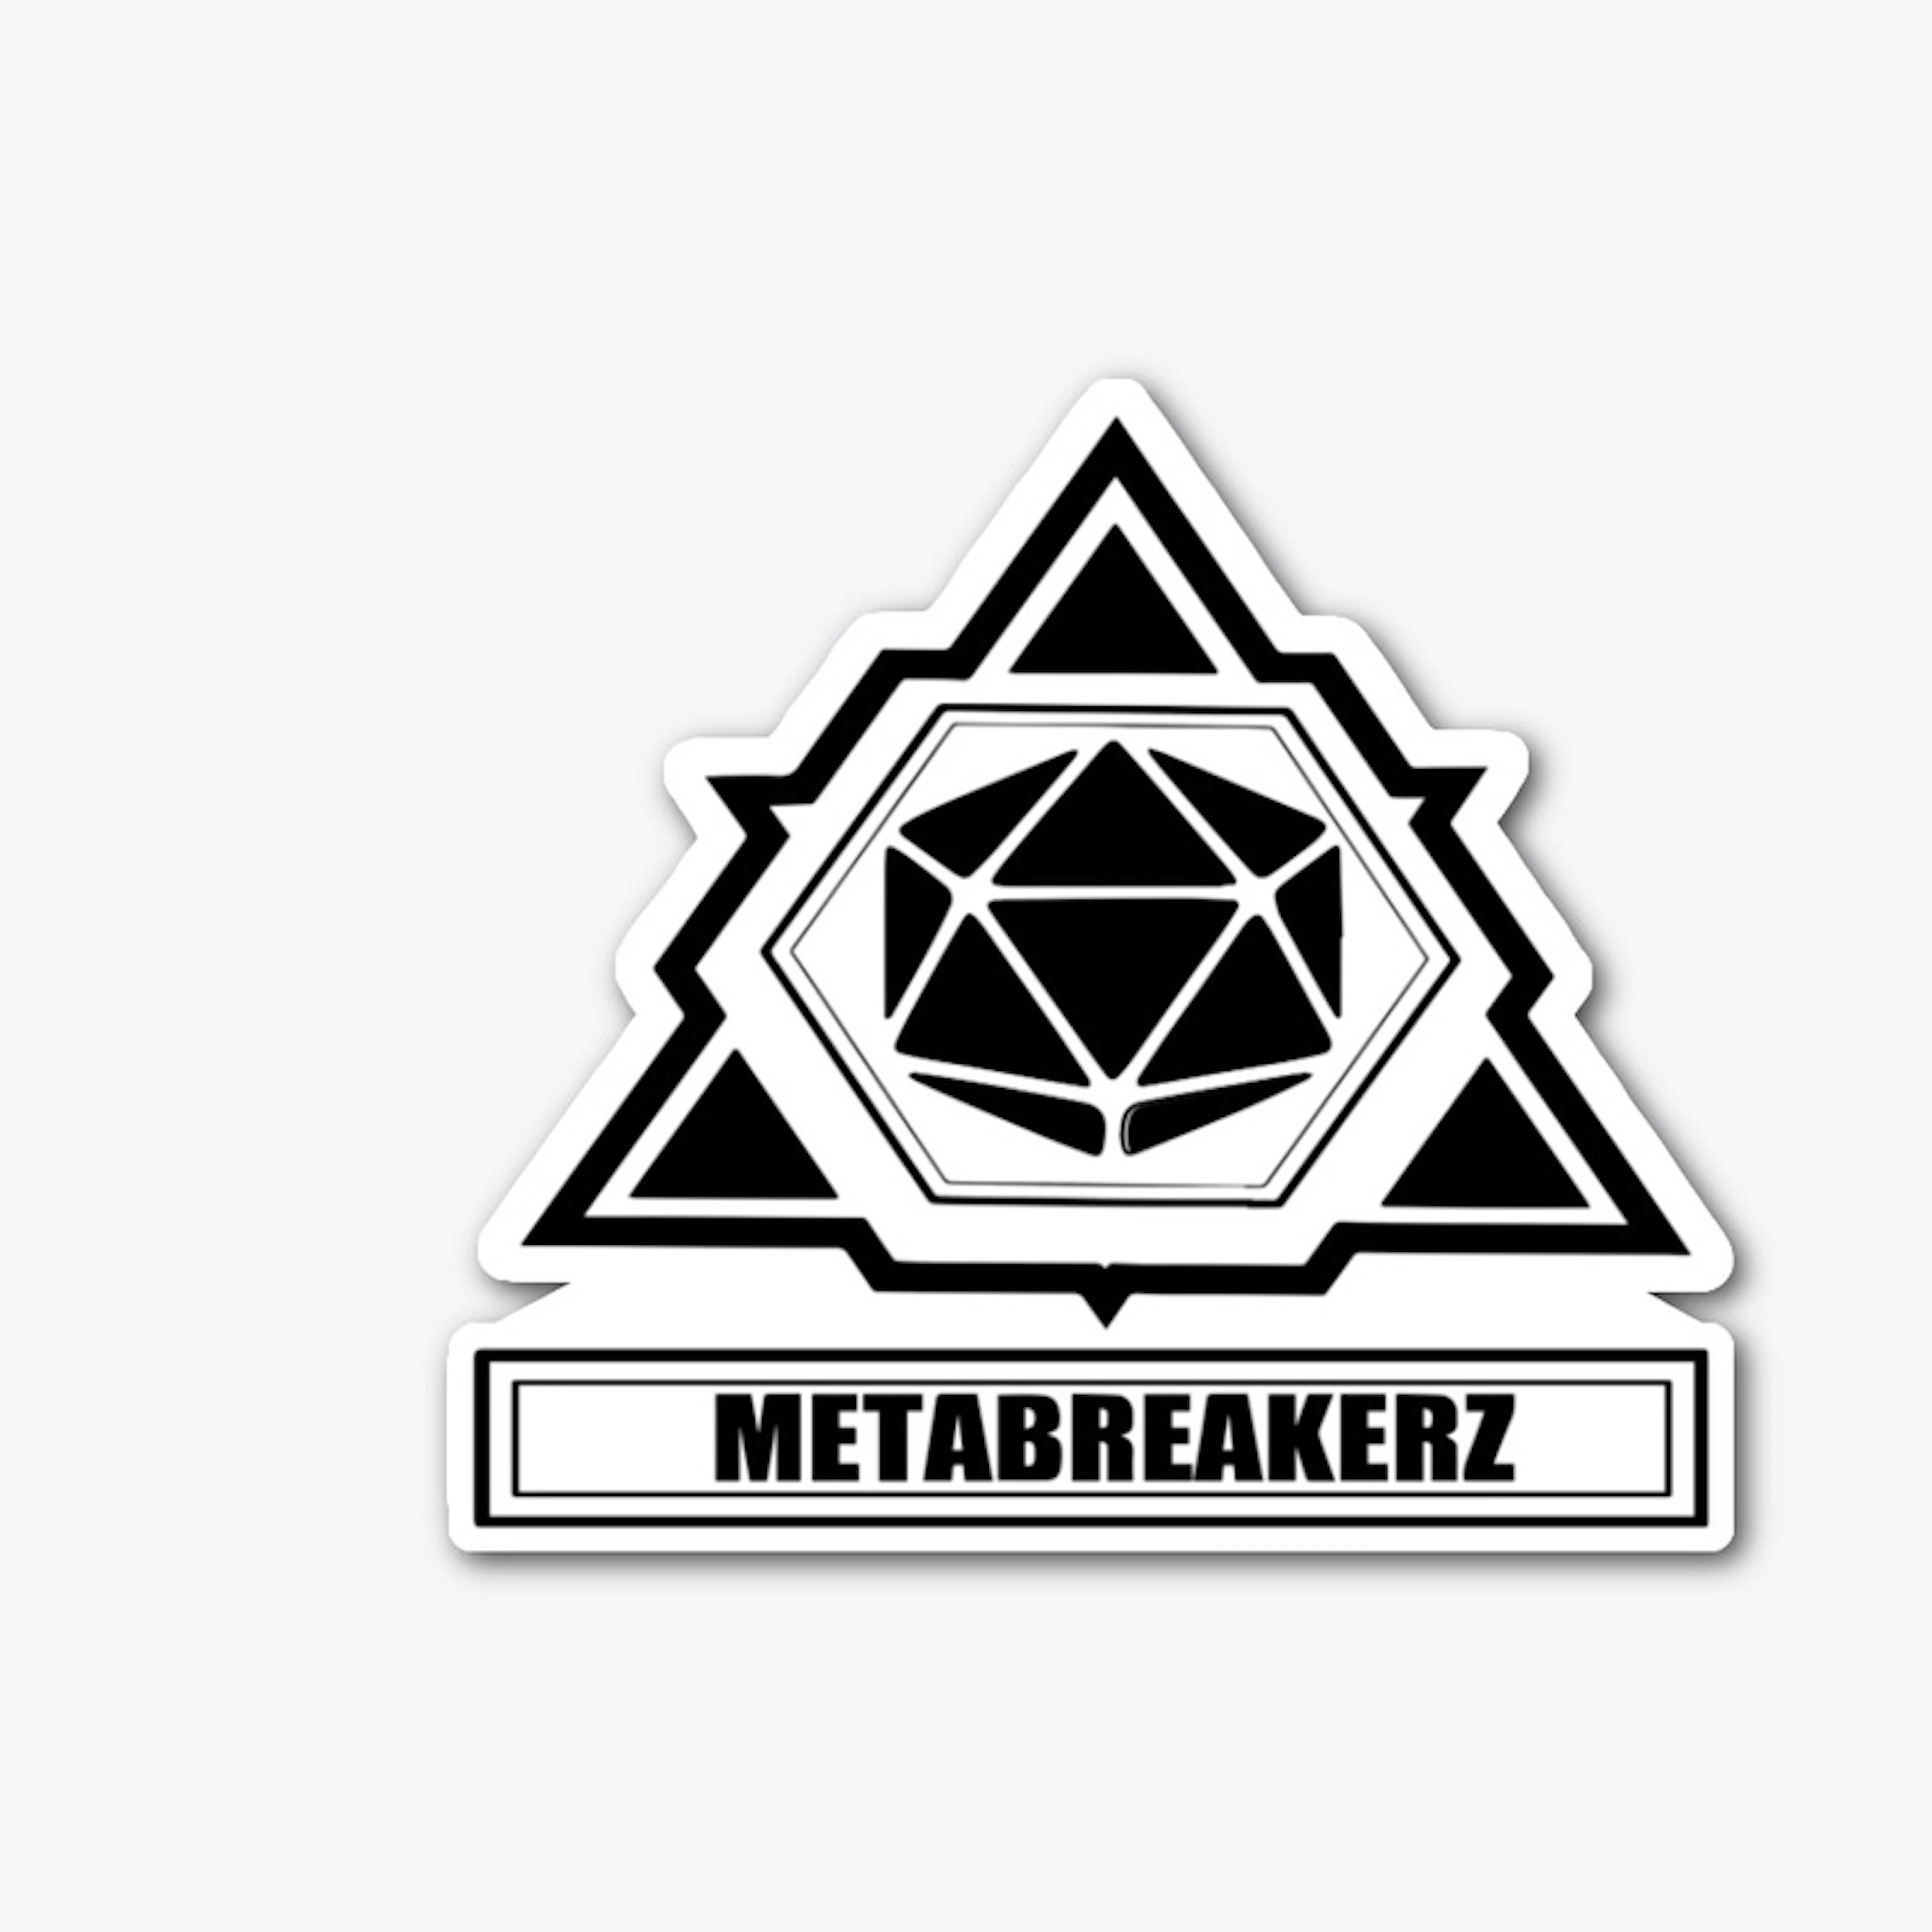 Metabreakerz logo